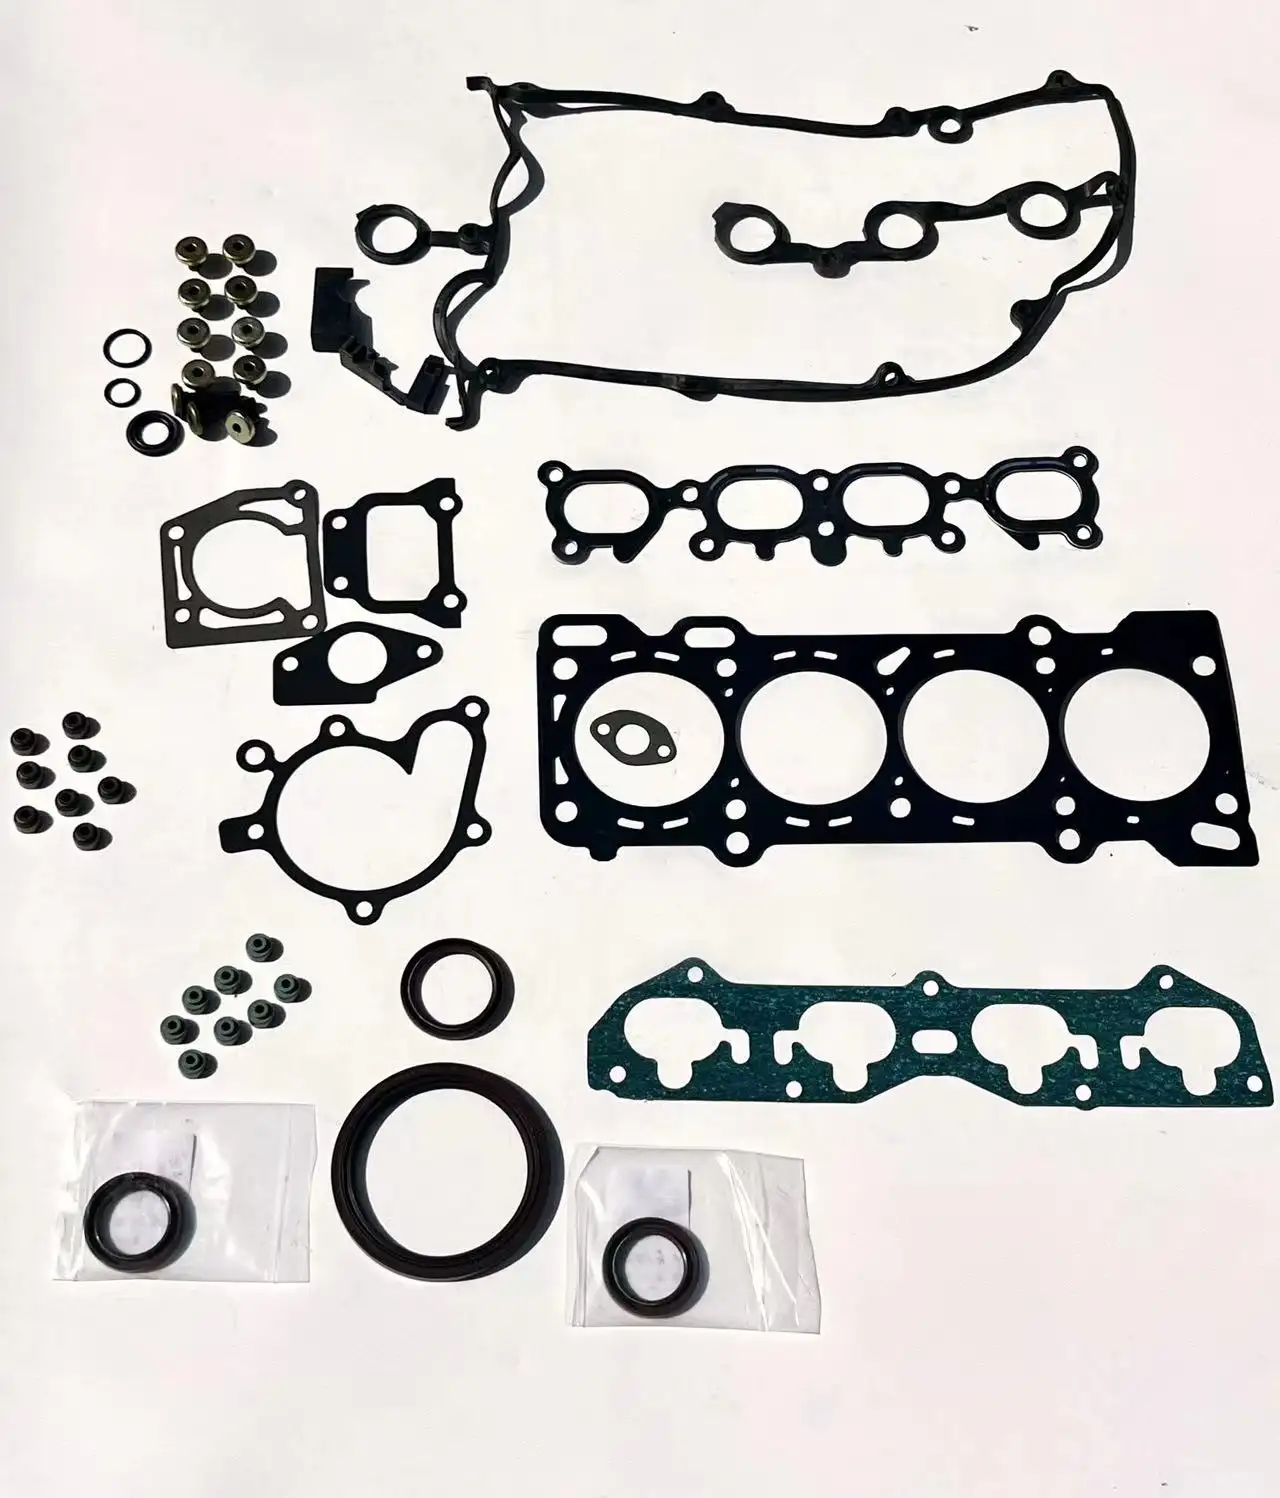 مجموعة جوانات كاملة لملحقات السيارة جوانات رأس الاسطوانة لـ مازدا 626 1.8L محرك 1.9L أسود وفضي 8FG6-10-271 8CG6-10-271